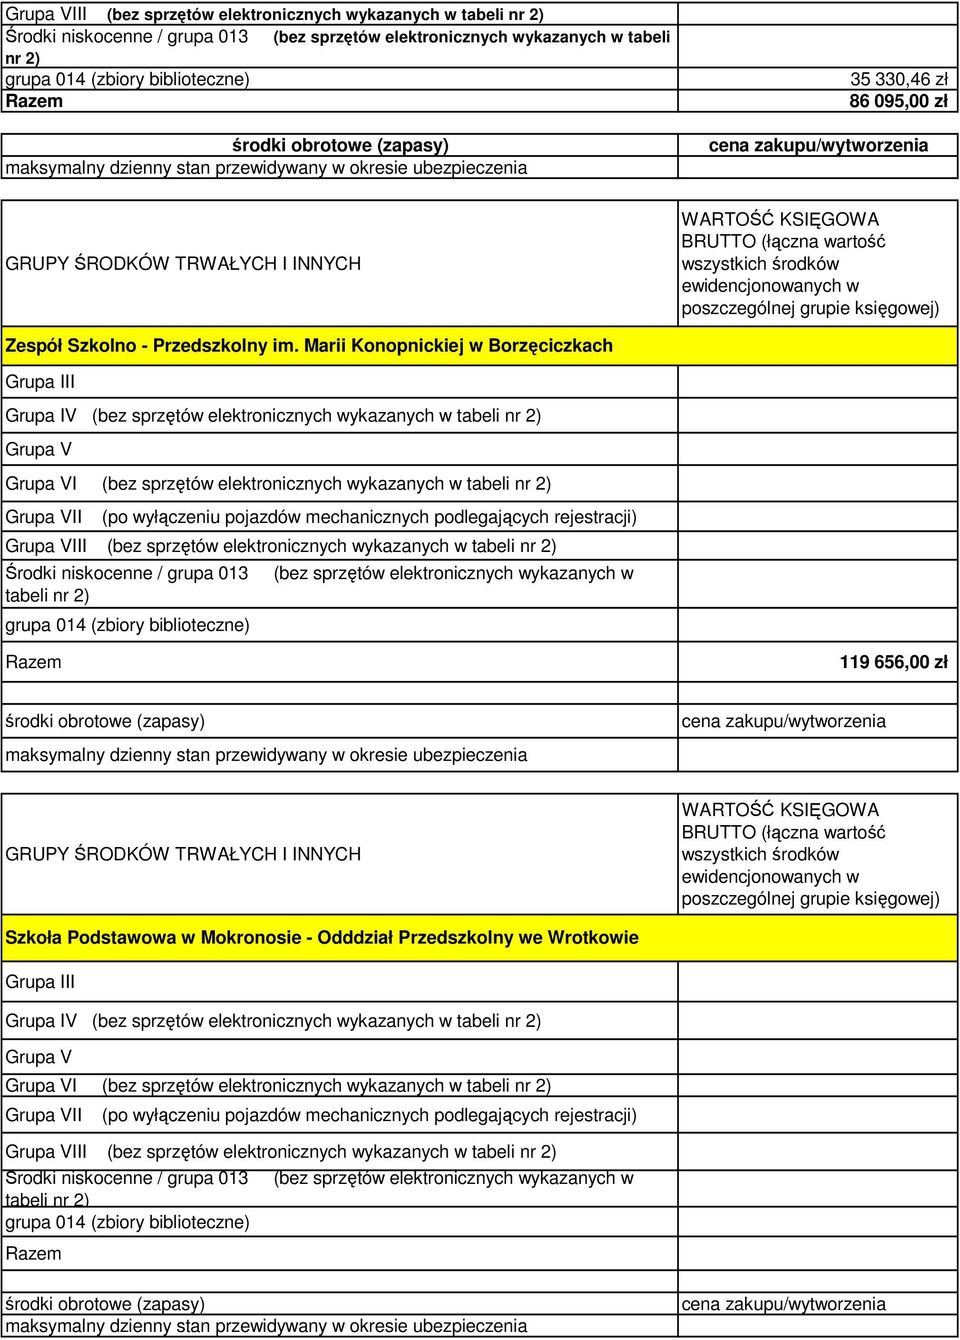 Marii Konopnickiej w Borzęciczkach Grupa IV (bez sprzętów elektronicznych wykazanych w tabeli nr 2) I (bez sprzętów elektronicznych wykazanych w tabeli nr 2) II (po wyłączeniu pojazdów mechanicznych